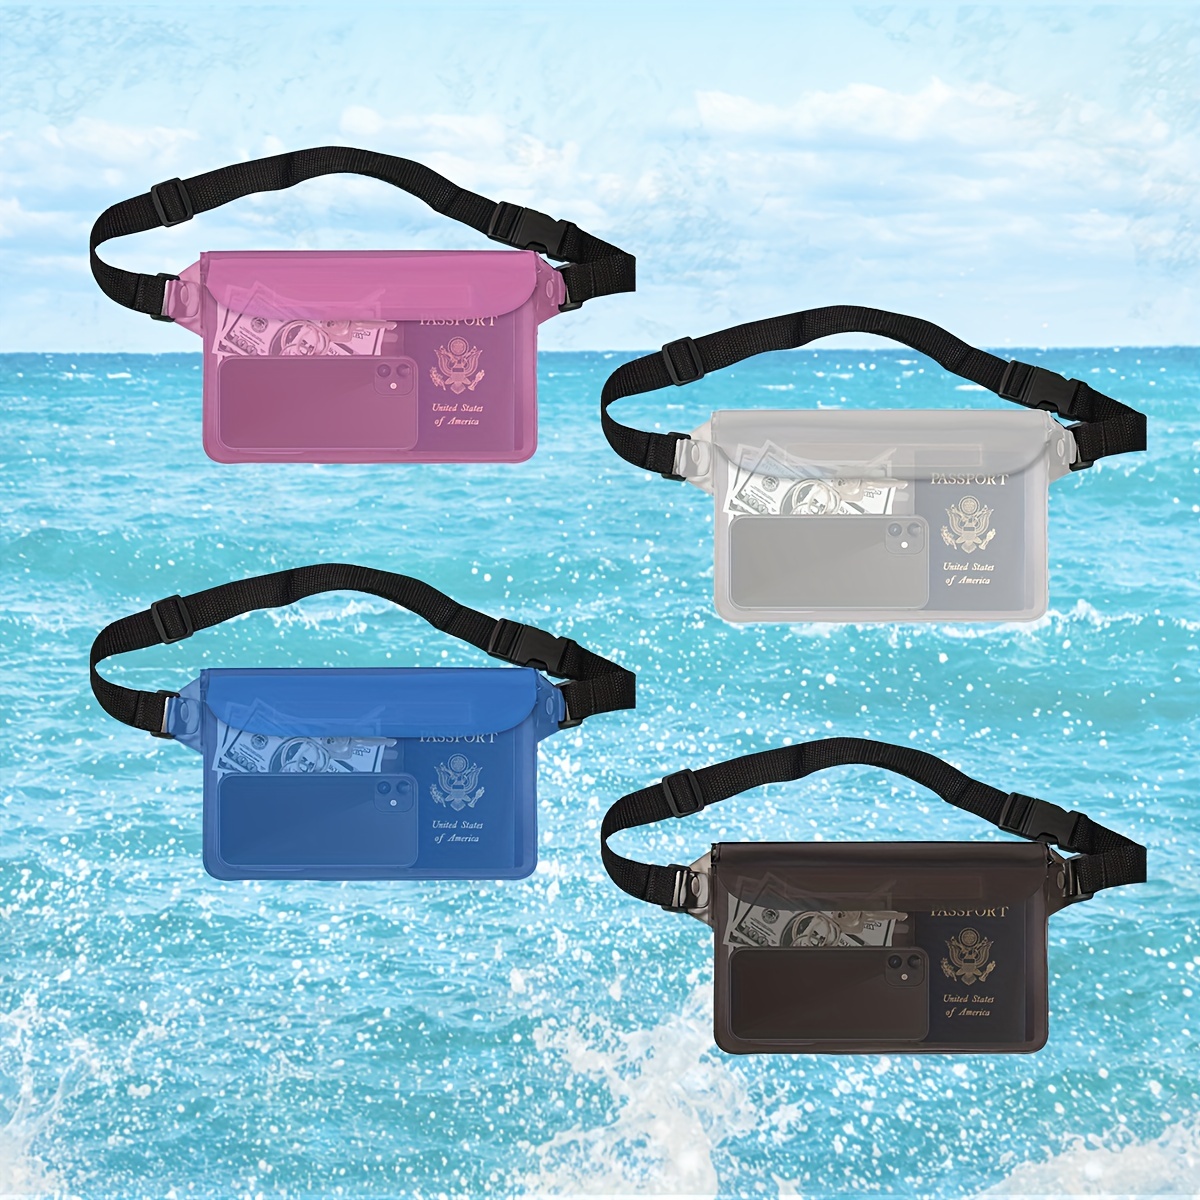  Bolsa impermeable de PVC para exteriores, bolsa de cubo de  playa, bolsa de natación para rafting, mochila al aire libre, bolsa  impermeable, bolsa seca, bolsa impermeable para kayak, bolsas secas  impermeables